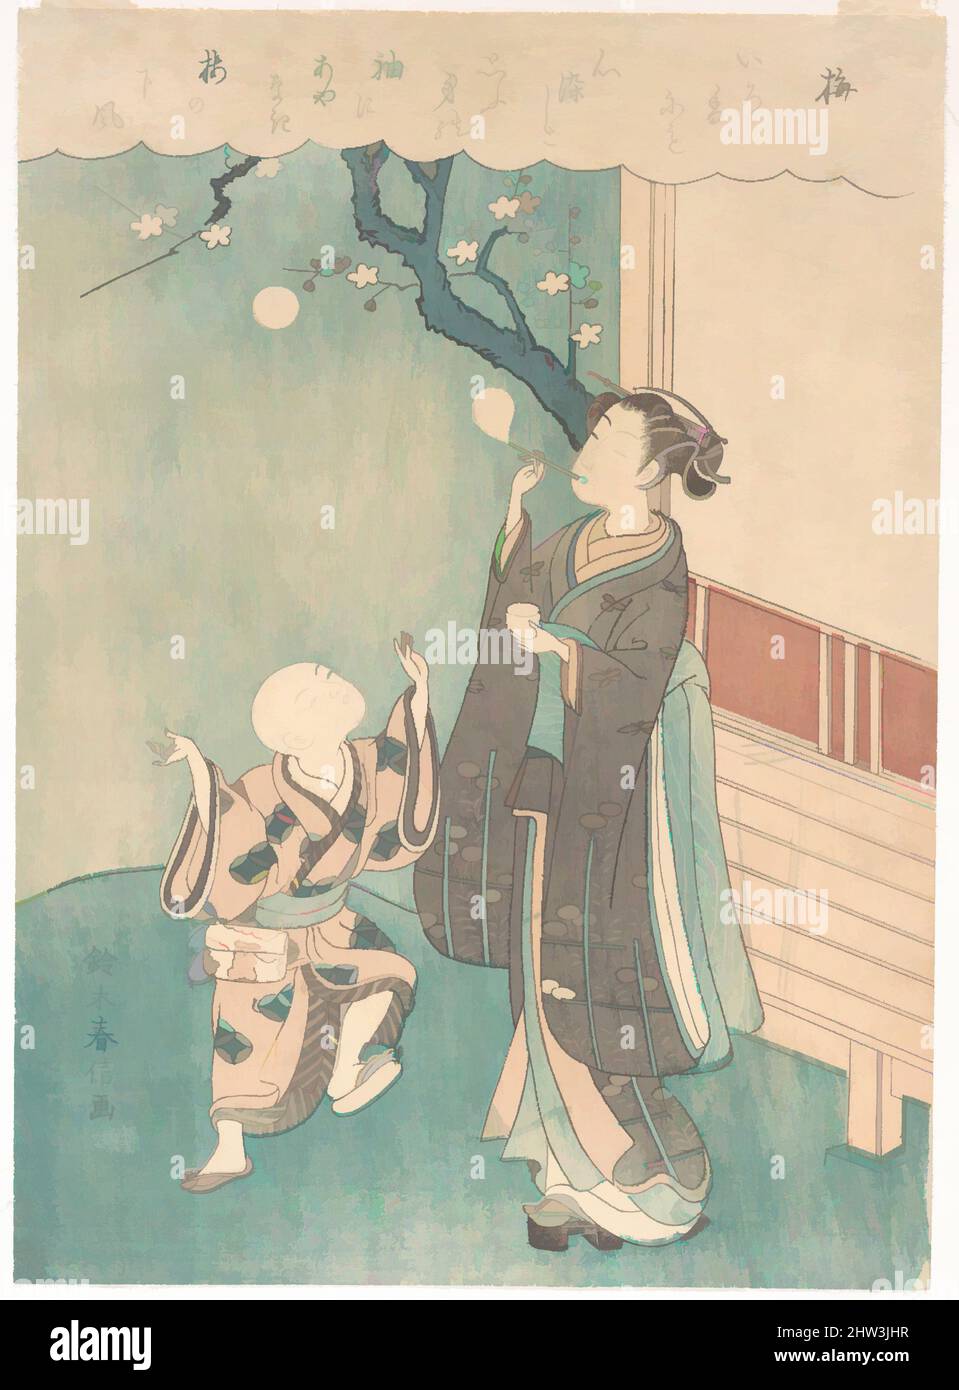 Arte ispirata a 梅, soffiare bolle di sapone sotto il Plum Blossom, Edo Period (1615–1868), Giappone, stampa in blocchi di legno policromi; inchiostro e colore su carta, 11 x 8 pollici (27,9 x 20,3 cm), Prints, Suzuki Harunobu (giapponese, 1725–1770), in questa stampa il dispositivo è di nuovo utilizzato di un poema classico, opere classiche modernizzate da Artotop con un tuffo di modernità. Forme, colore e valore, impatto visivo accattivante sulle emozioni artistiche attraverso la libertà delle opere d'arte in modo contemporaneo. Un messaggio senza tempo che persegue una nuova direzione selvaggiamente creativa. Artisti che si rivolgono al supporto digitale e creano l'NFT Artotop Foto Stock